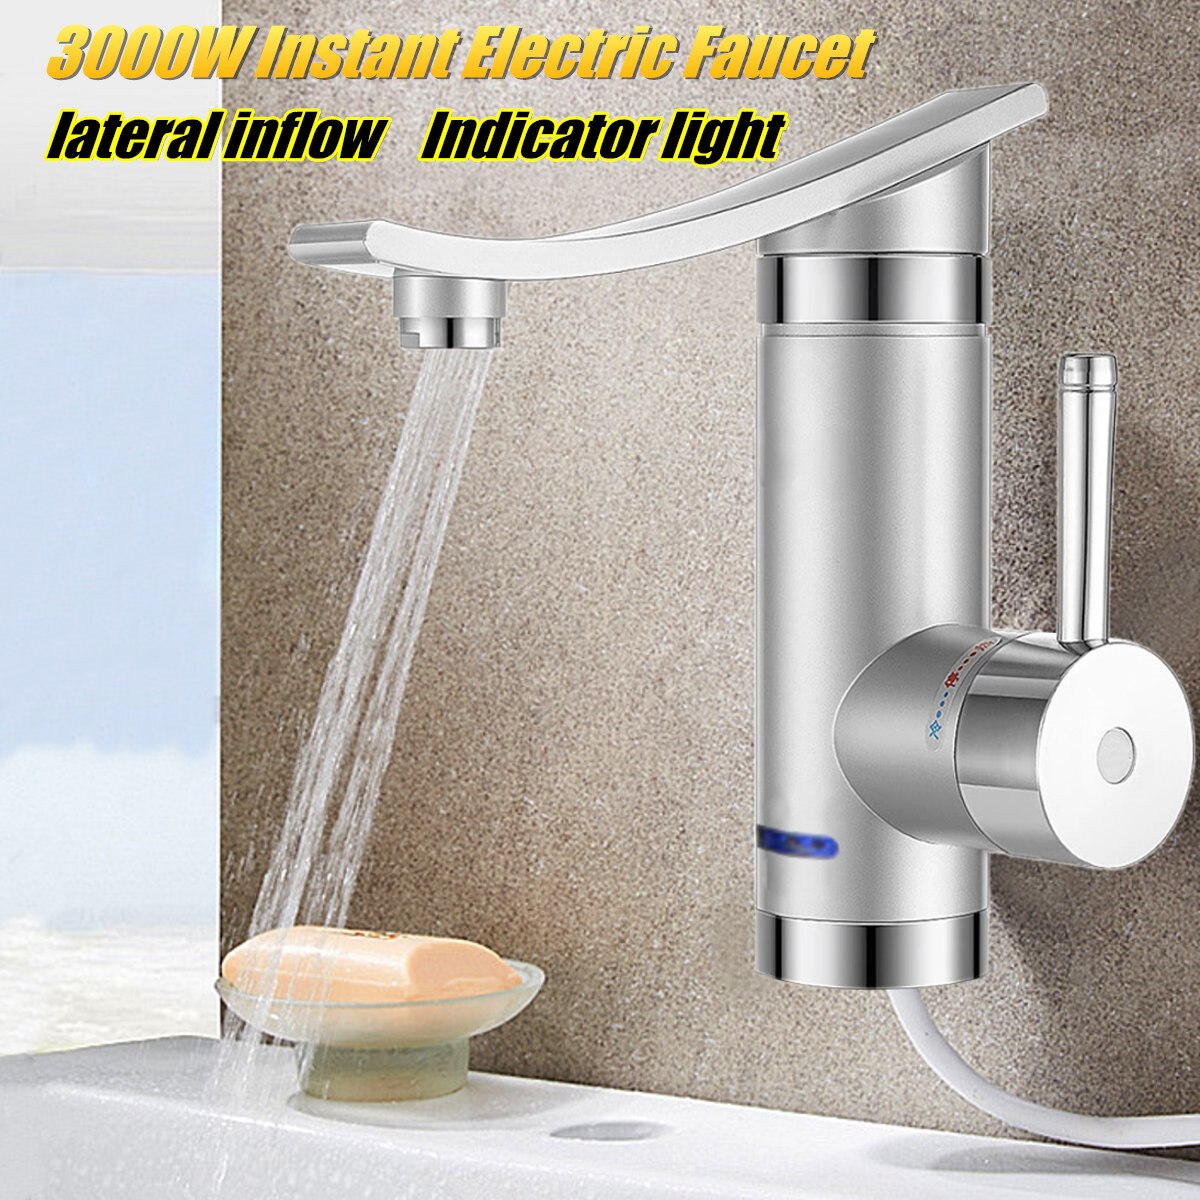 Hjem 3000w instant elektrisk vandhane vand elektriske vandvarmere under indstrømning/sidevand uden lækagesikring: Sidevand